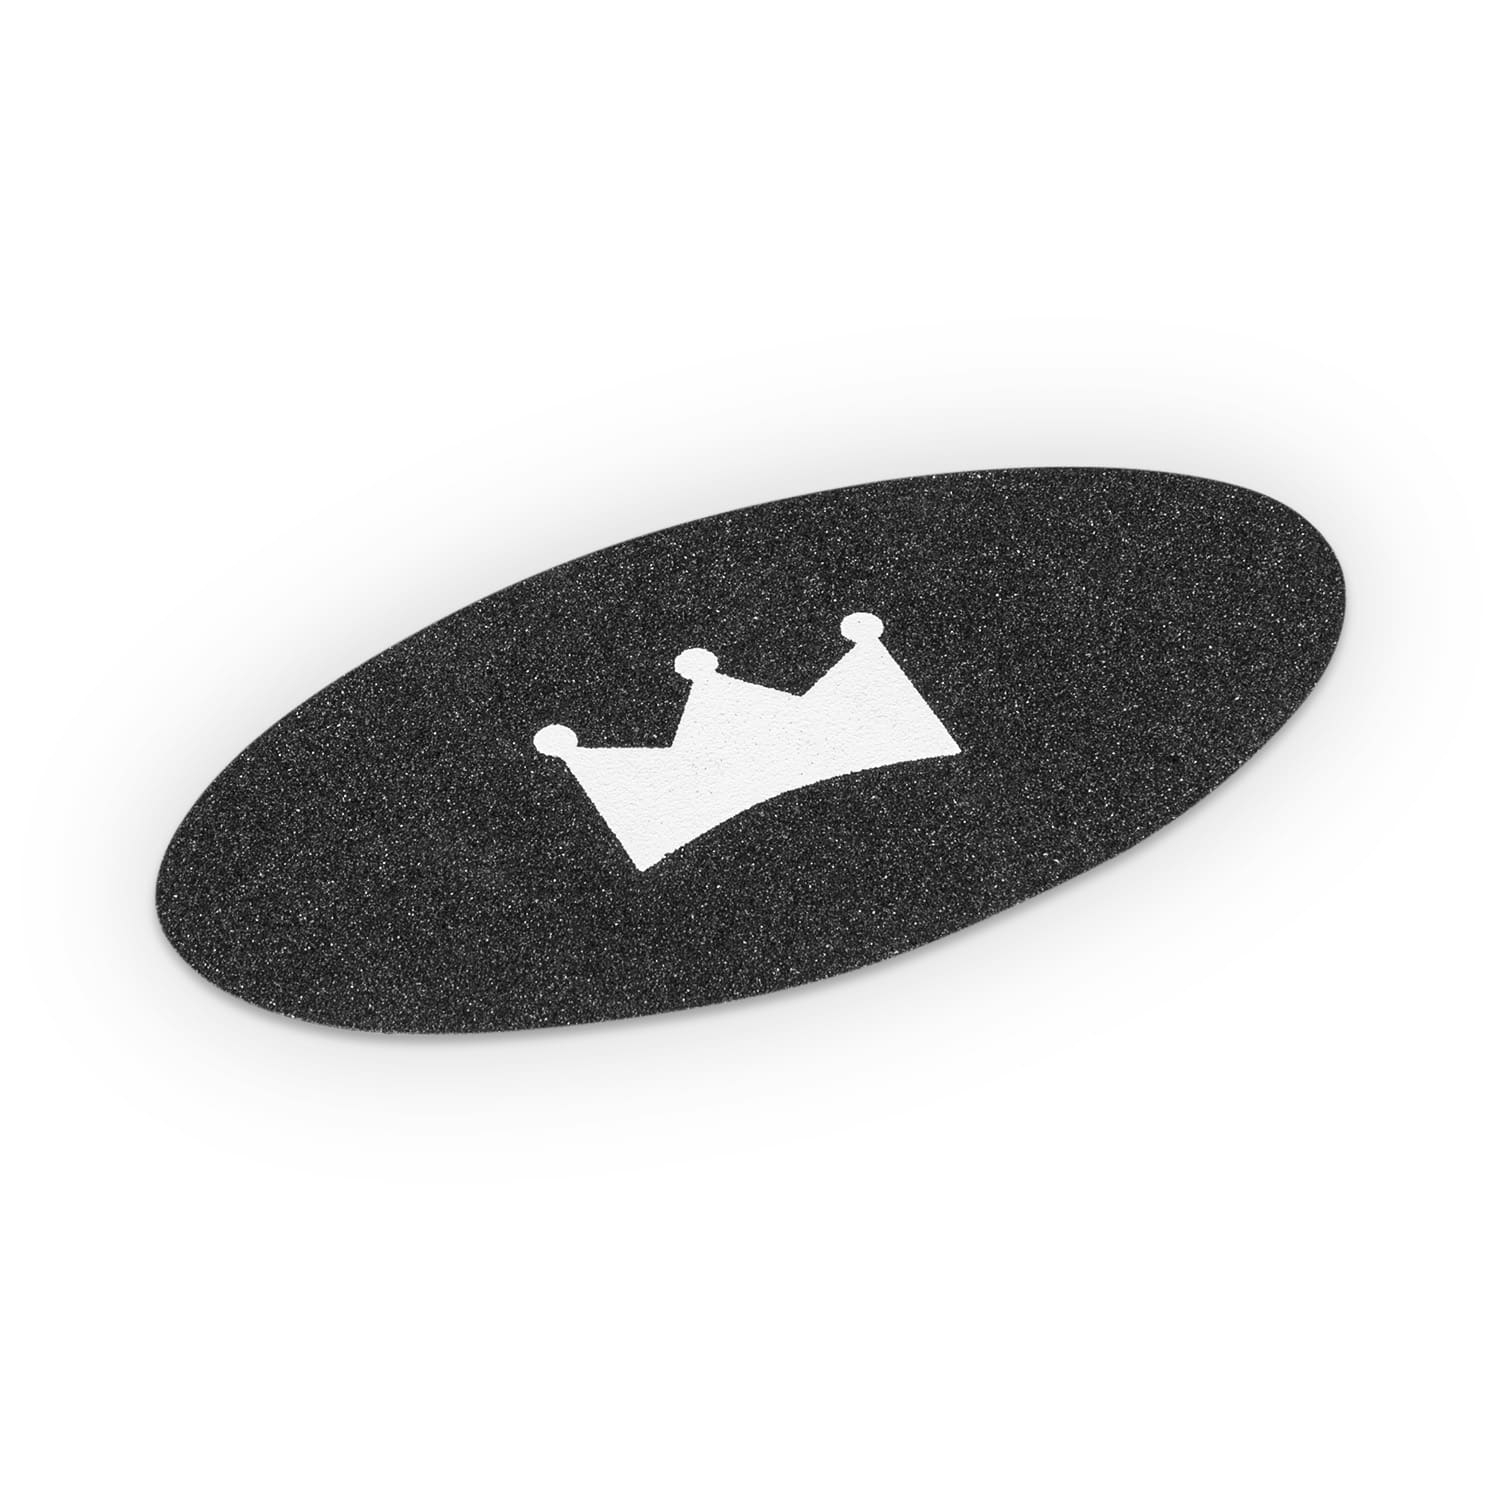 BoarderKING Griptape für Balanceboard, für Indoor-Board, Kunststoff, 2 Stück, oval